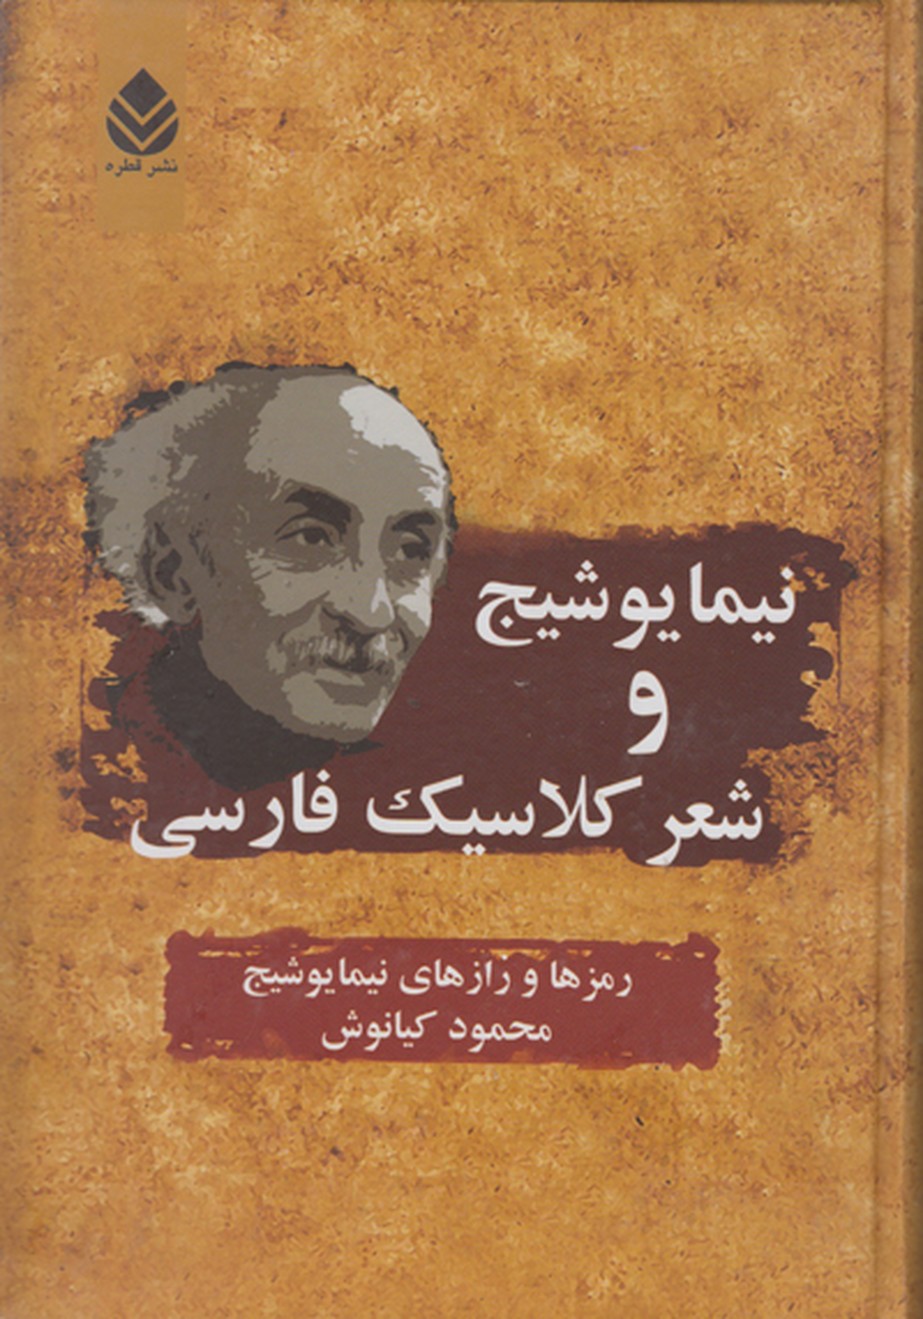 نیما یوشیج و شعرکلاسیک فارسی